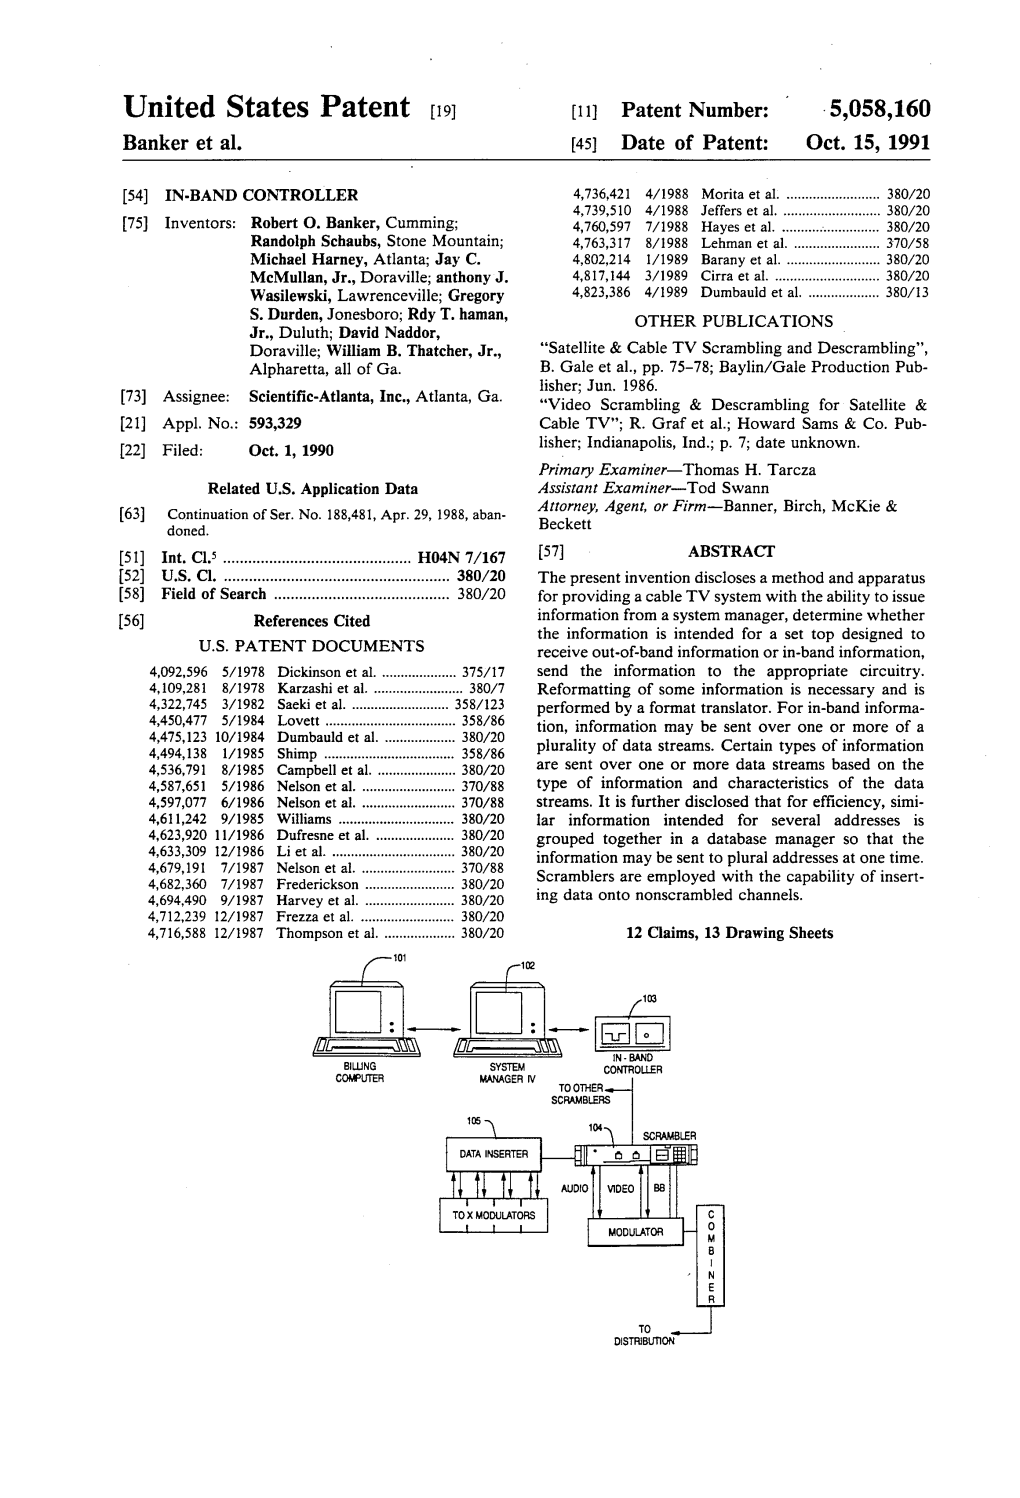 United States Patent (19) 11) Patent Number: 5,058,160 Banker Et Al